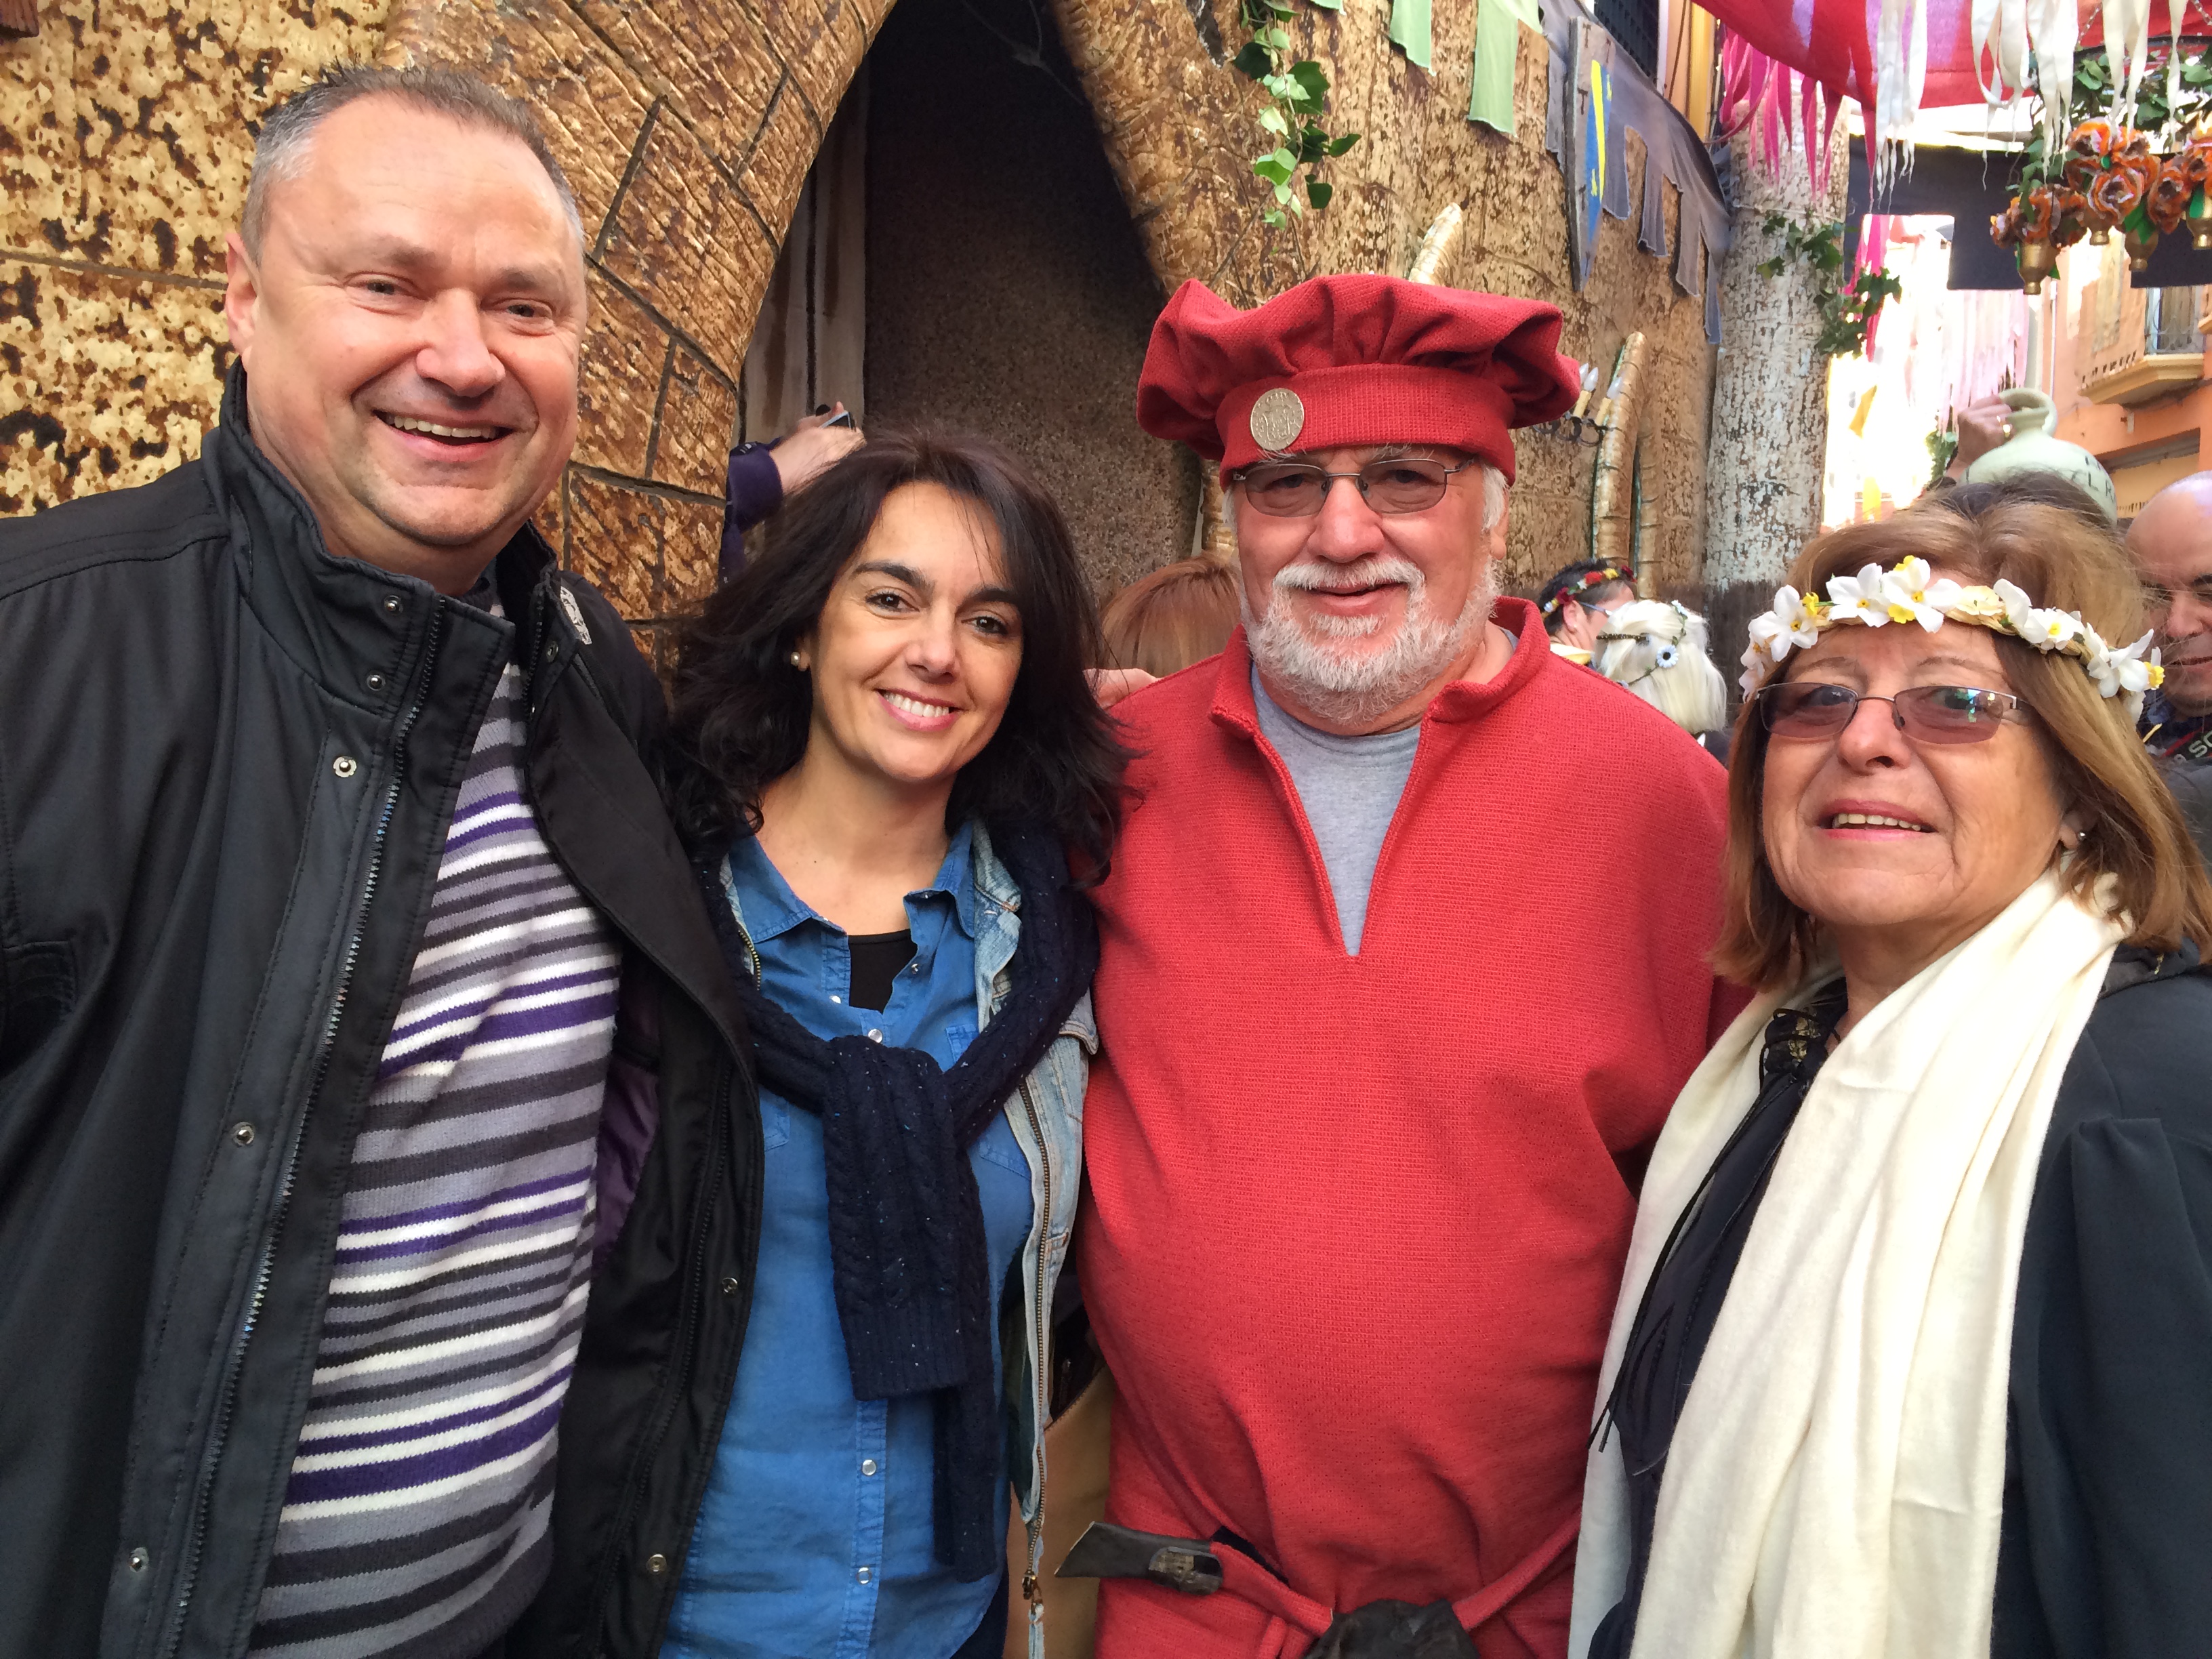 , Mittelalter-Fest von Villena (Spanien), ein magisches Erlebnis für die gesamte Familie, Mario Schumacher Blog